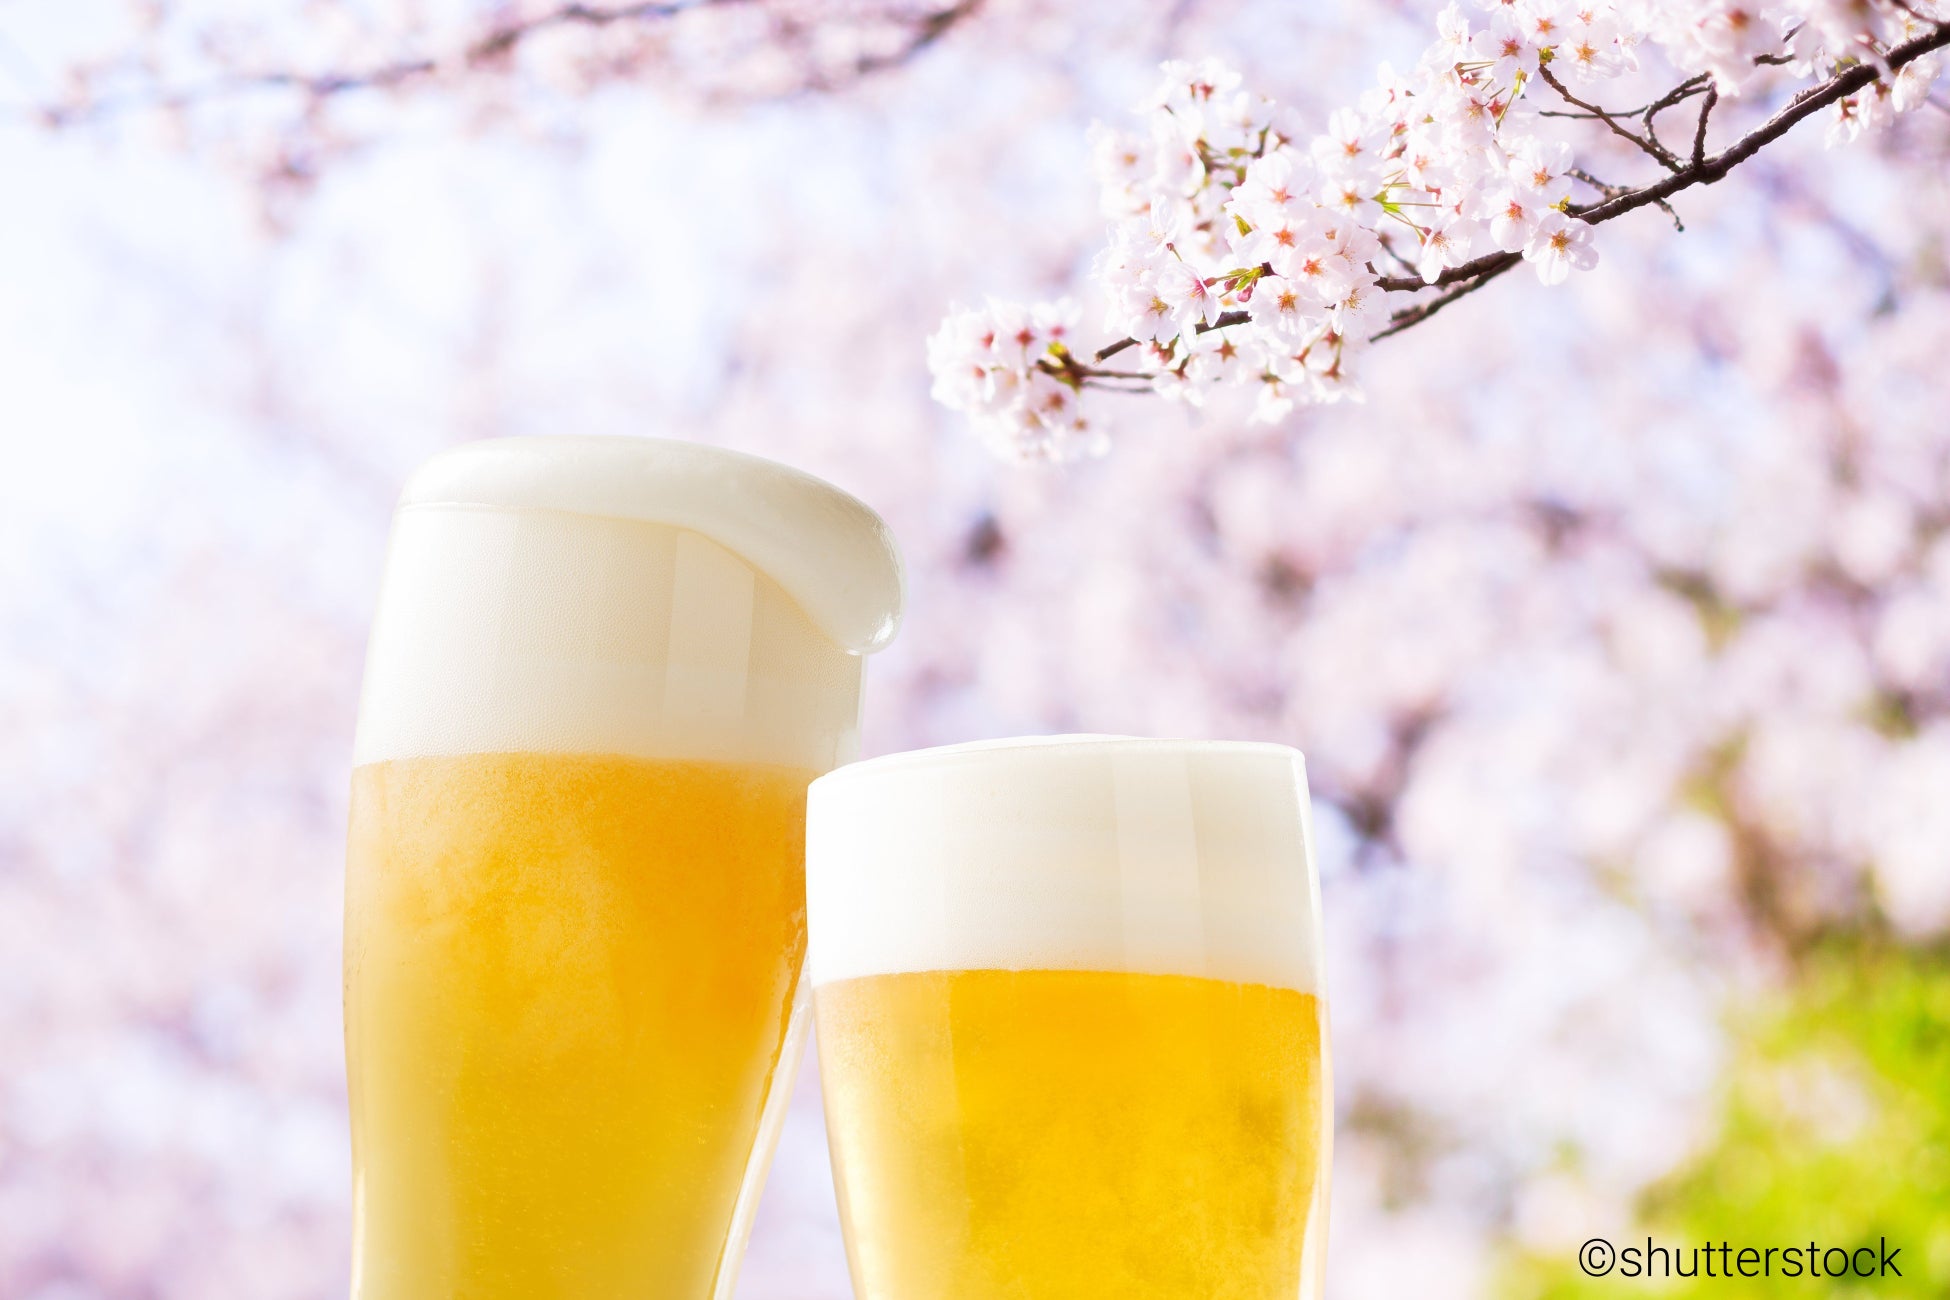 ～お花見！ビール！「ohanami.beer」空いています～「.beer」などアルコール飲料系ドメイン最大20%オフプロモ...